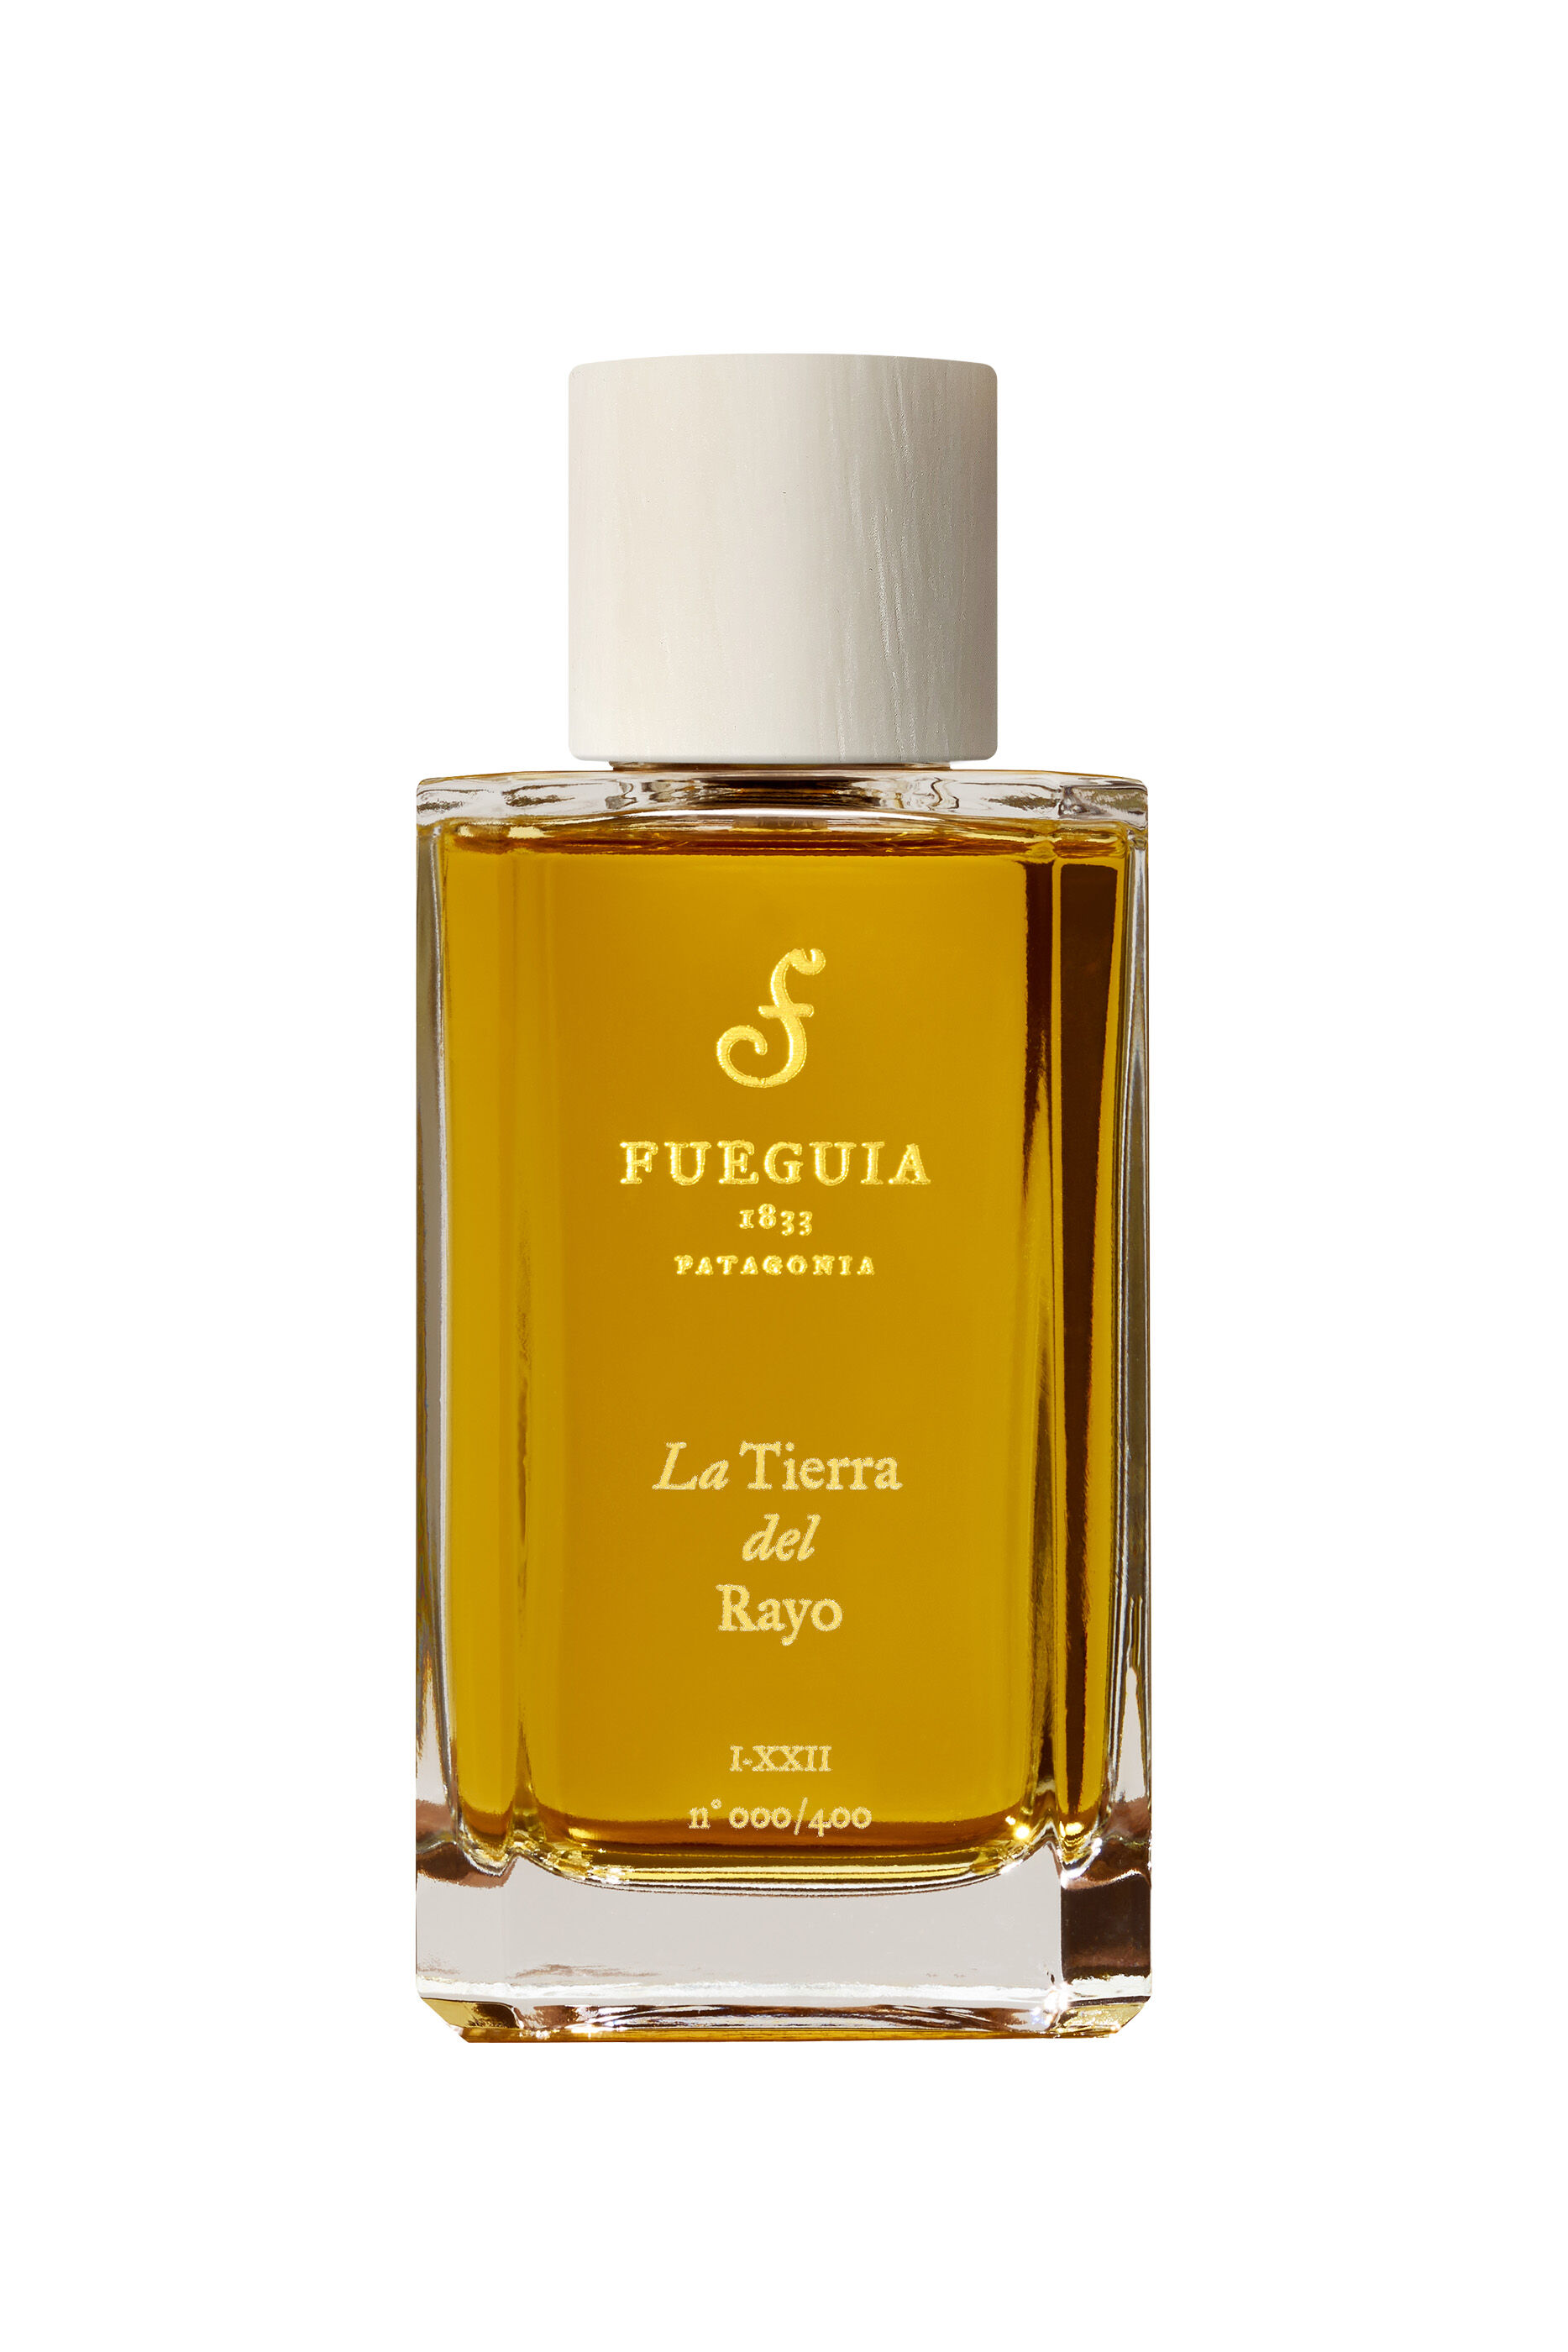 高価値セリー ラ ティエラ デル ラージョ フエギア fueguia1833 香水 